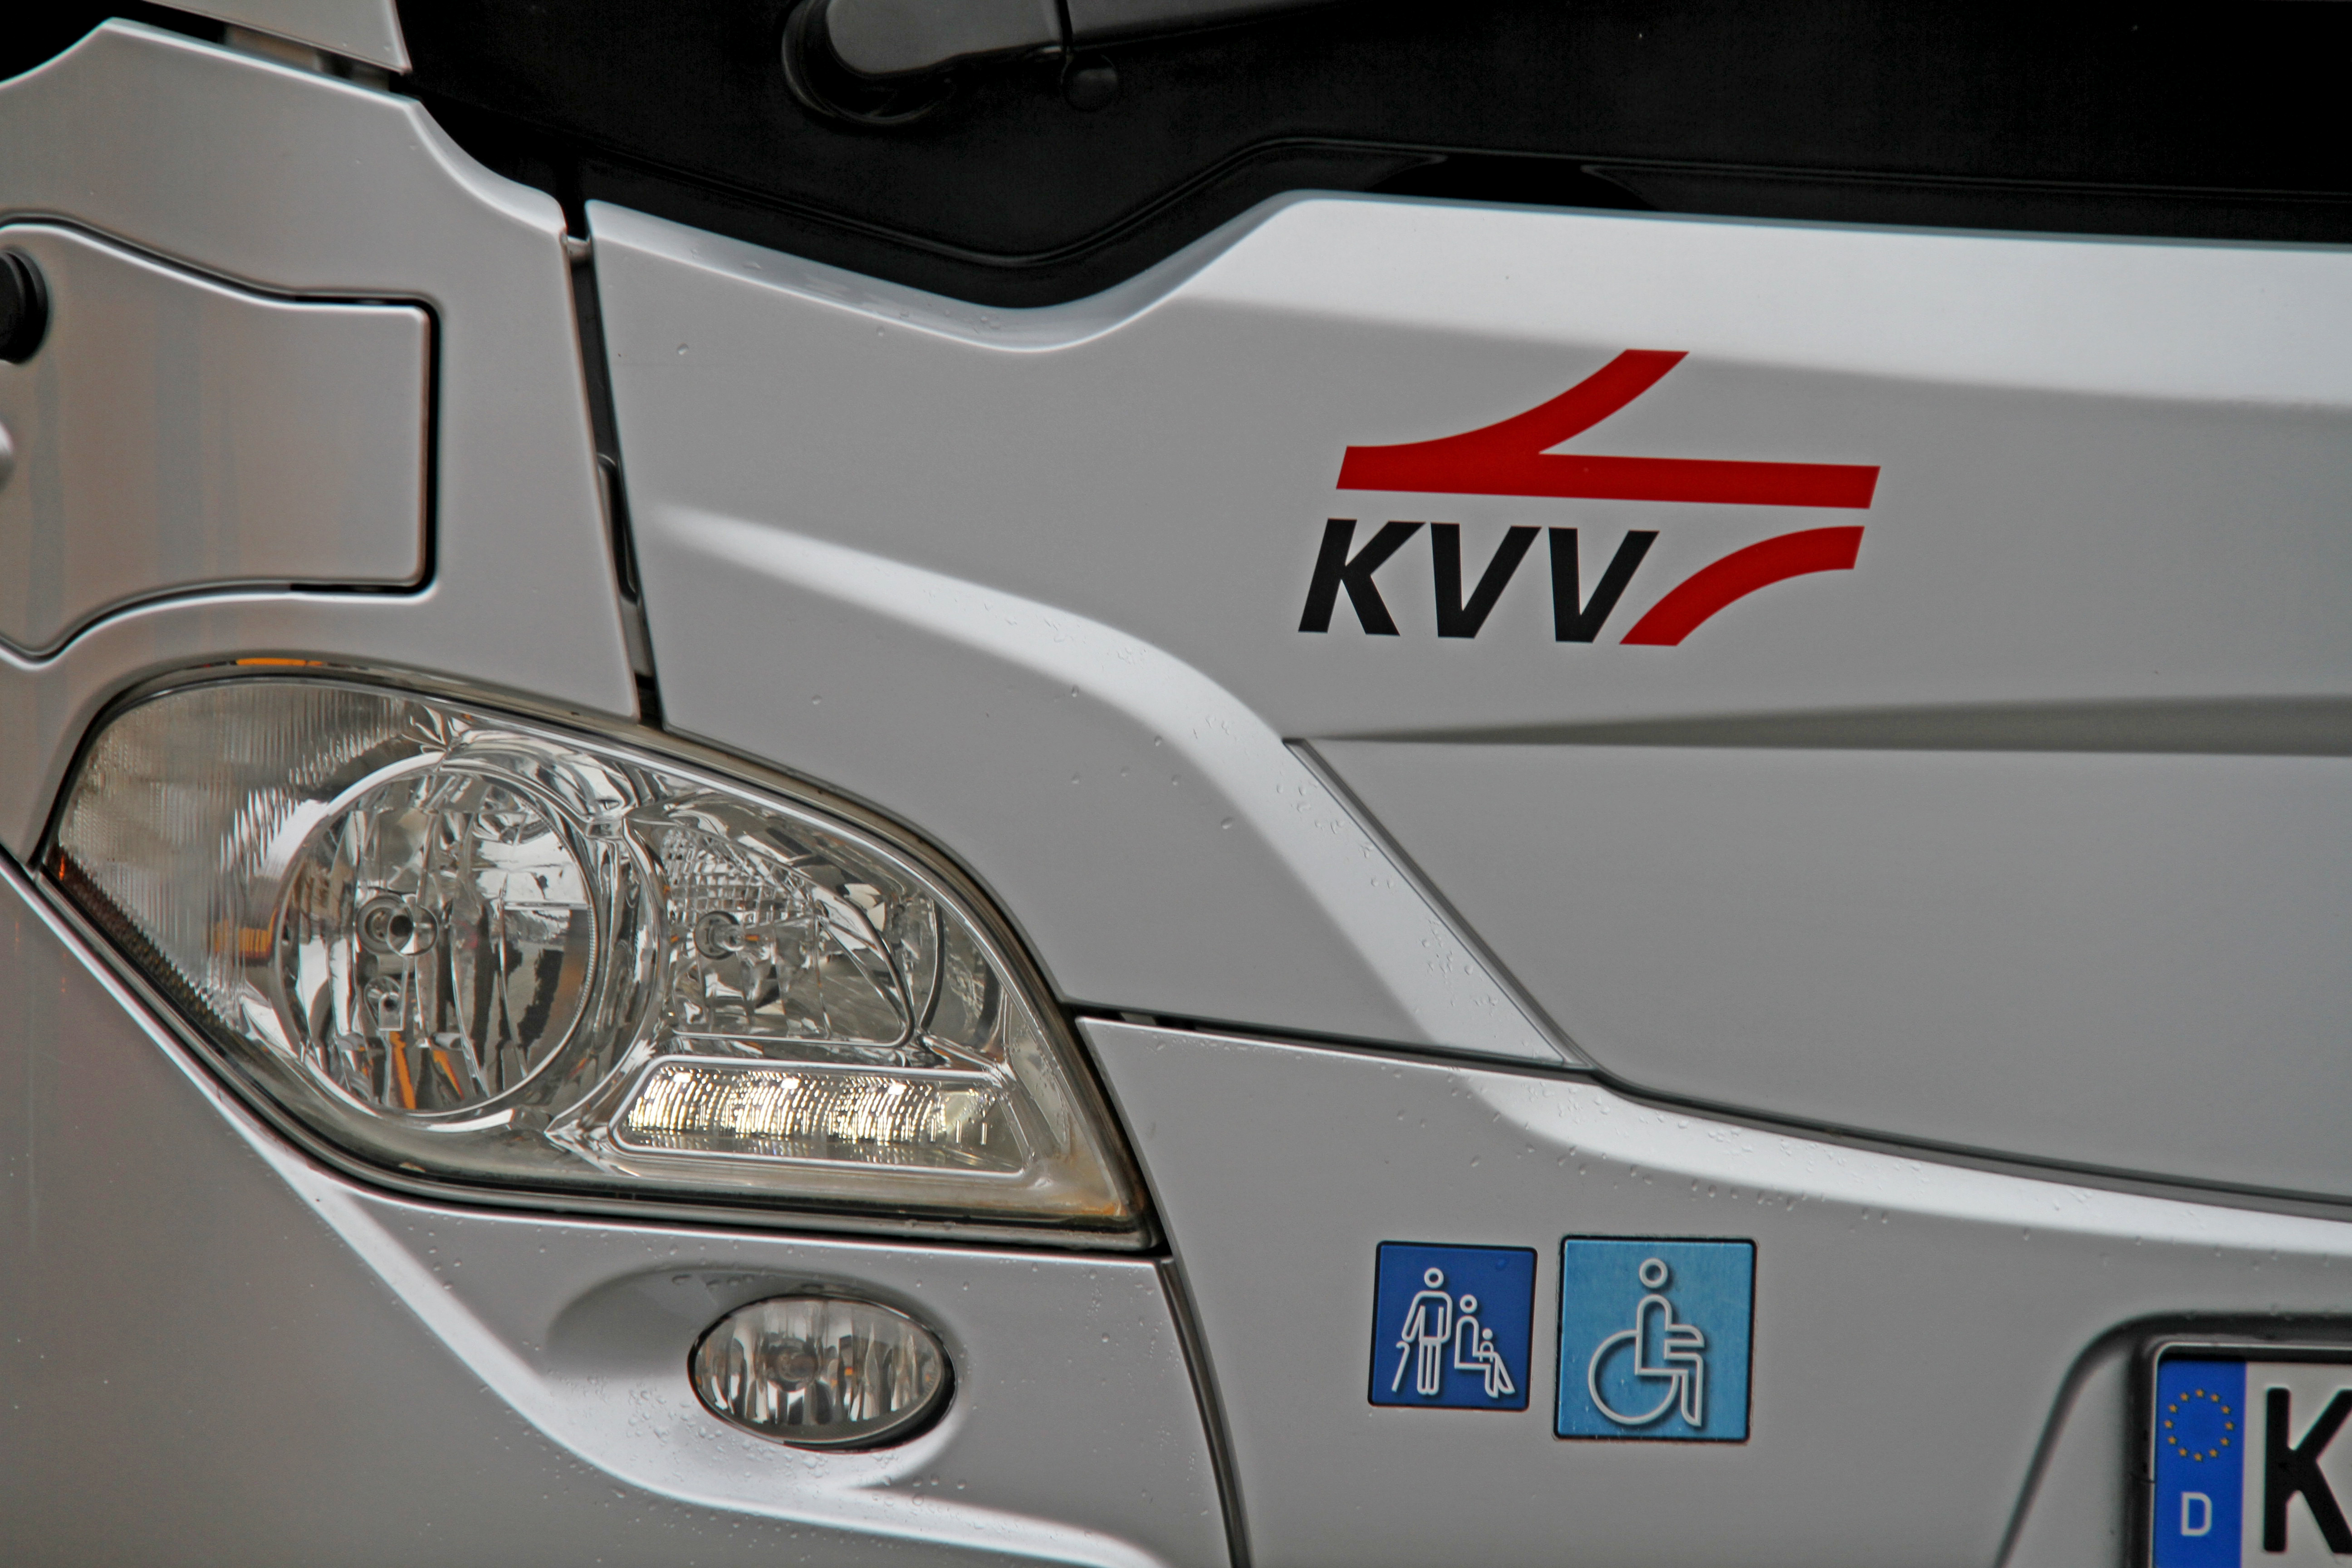 Scheinwerfer eines silberfarbenen Busses mit KVV-Logo